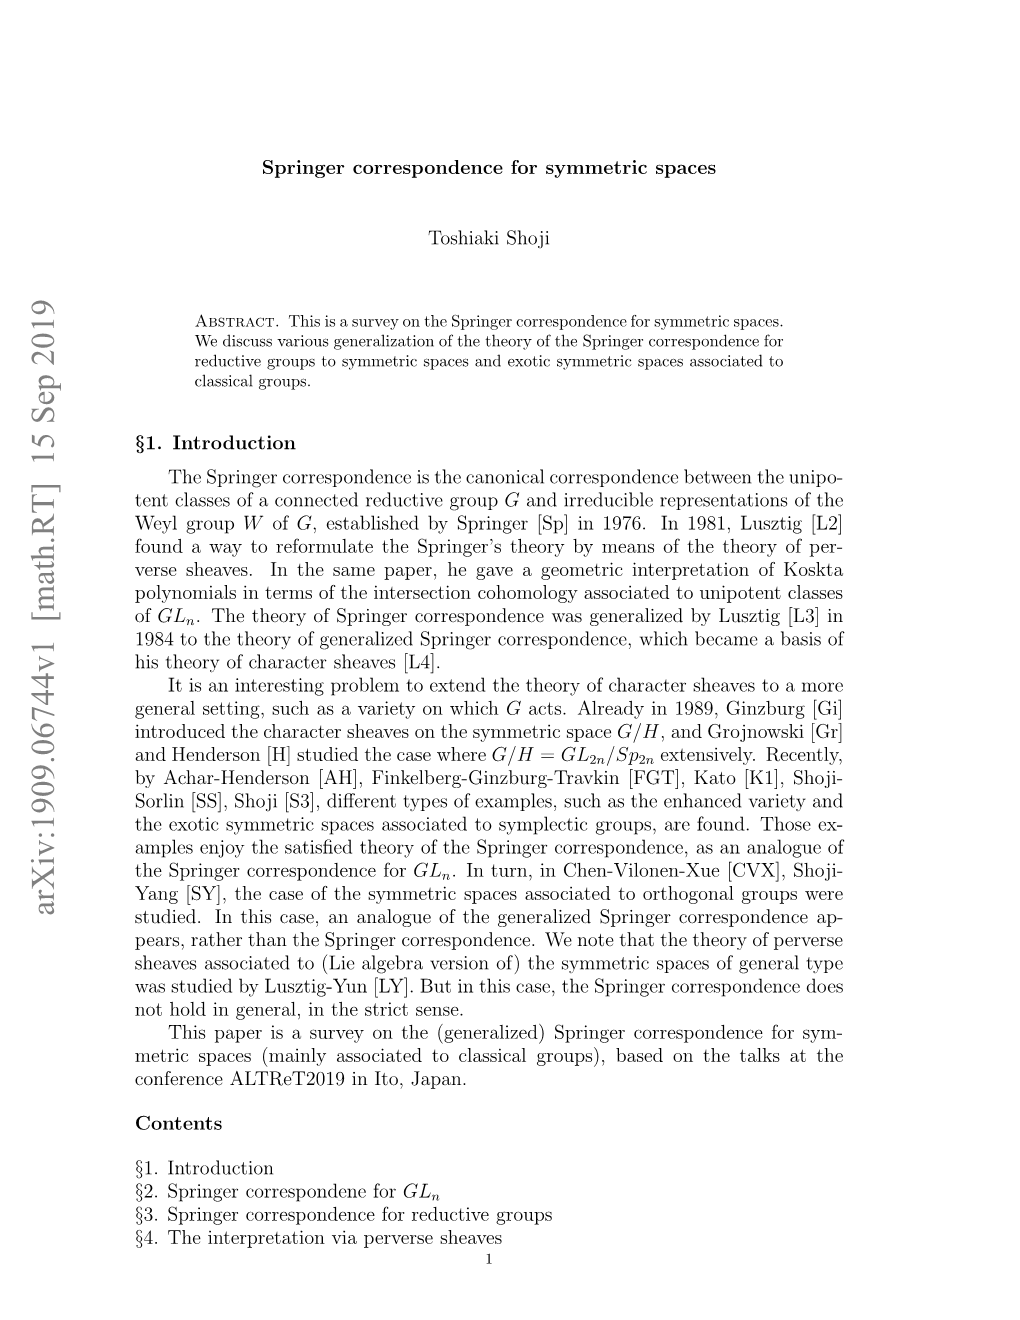 Springer Correspondence for Symmetric Spaces, Preprint, Arxiv: 1510.05986V2